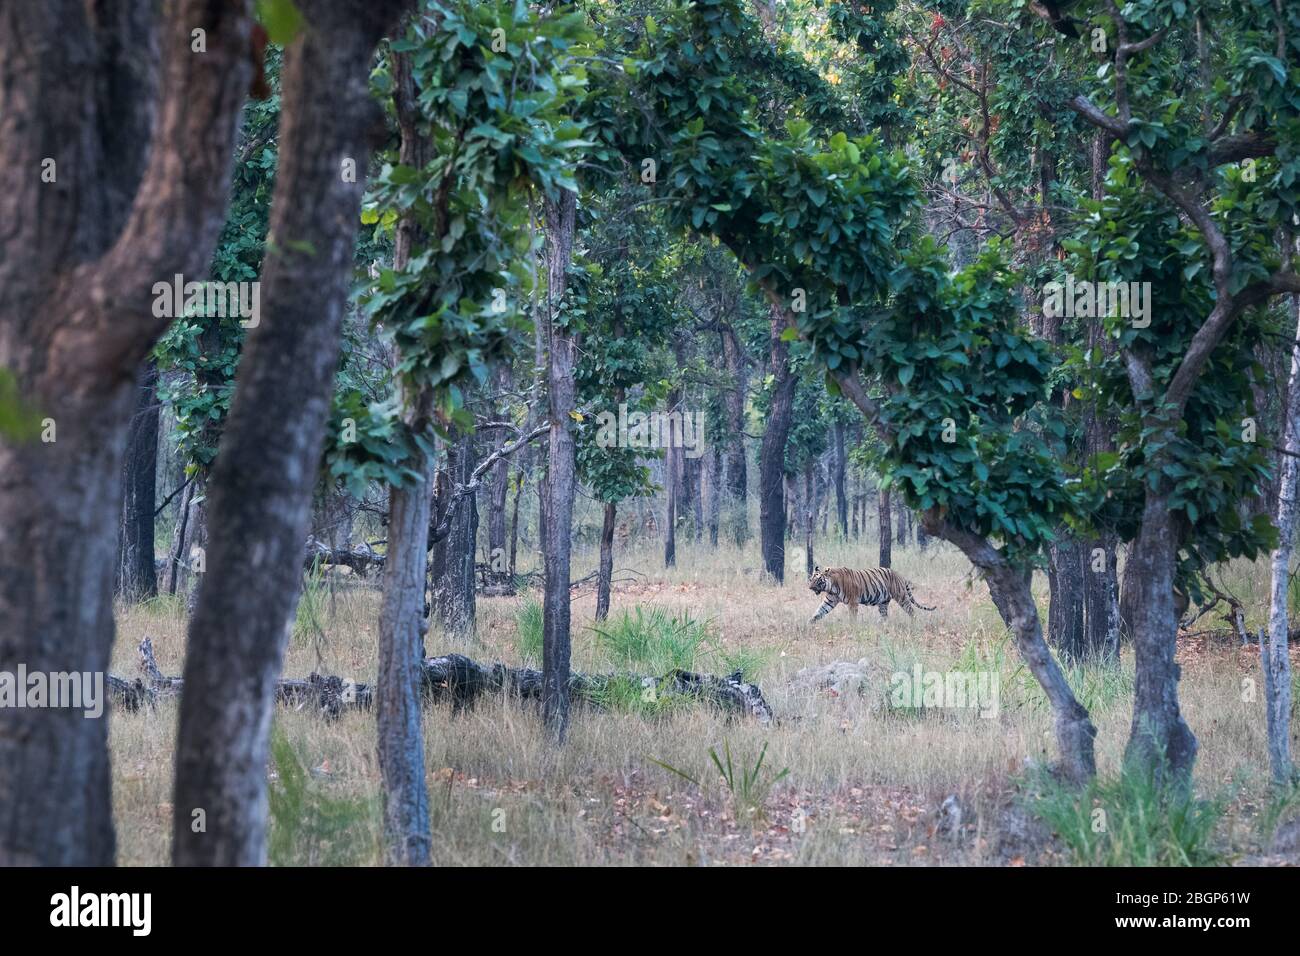 L'image du Bengale Riger (Panthera tigris) dans le paysage du parc national de Bandavgrah, Inde, Asie Banque D'Images